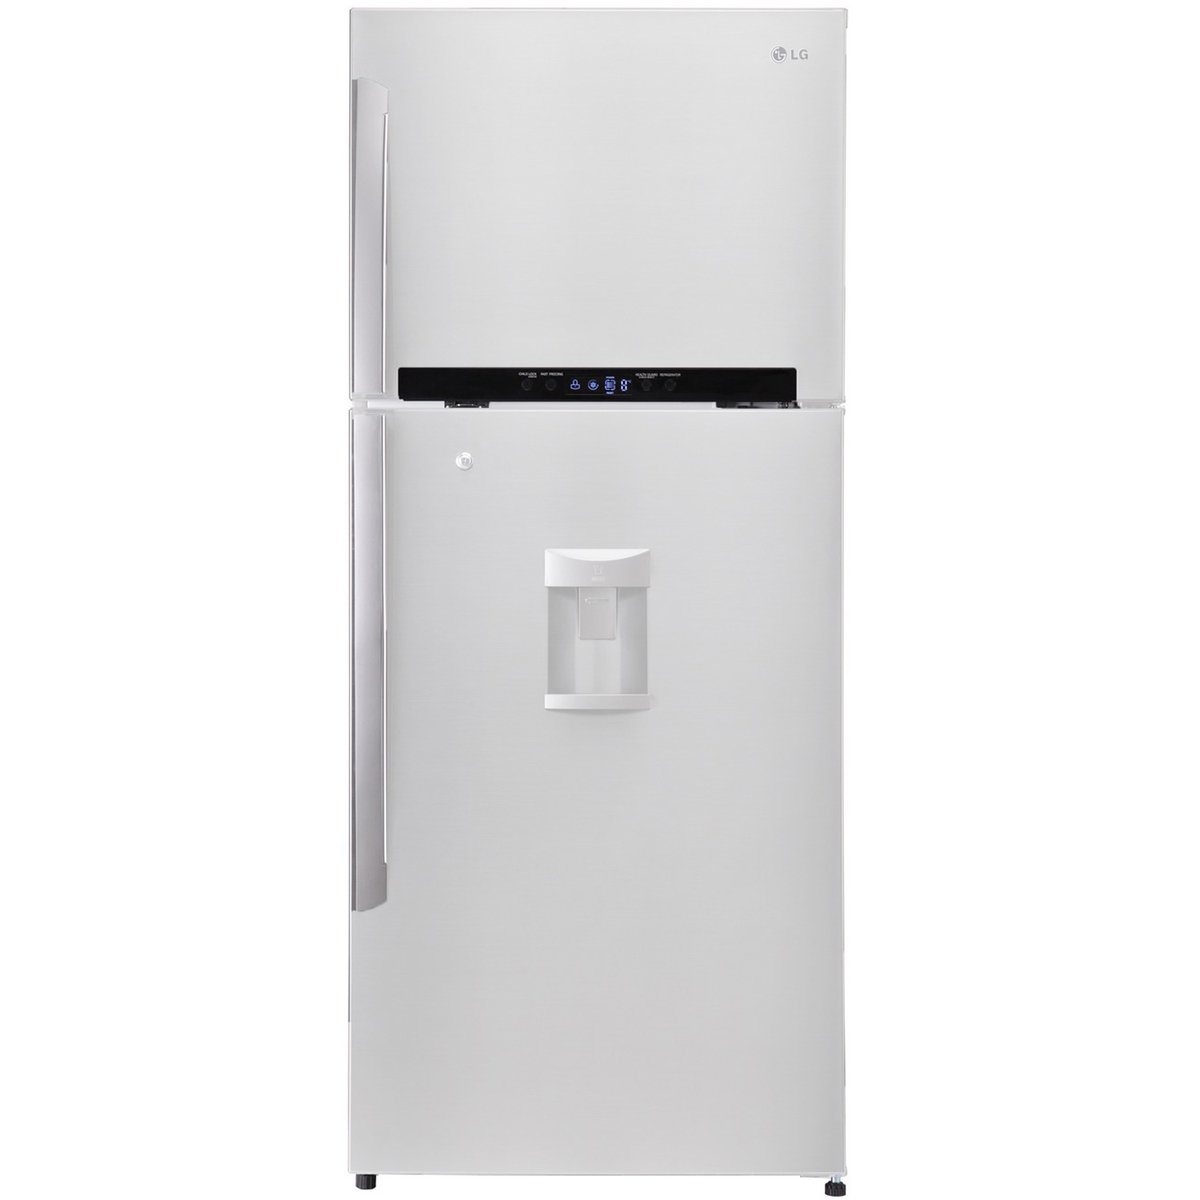 LG Double Door Refrigerator GR-F832HBHU 830Ltr